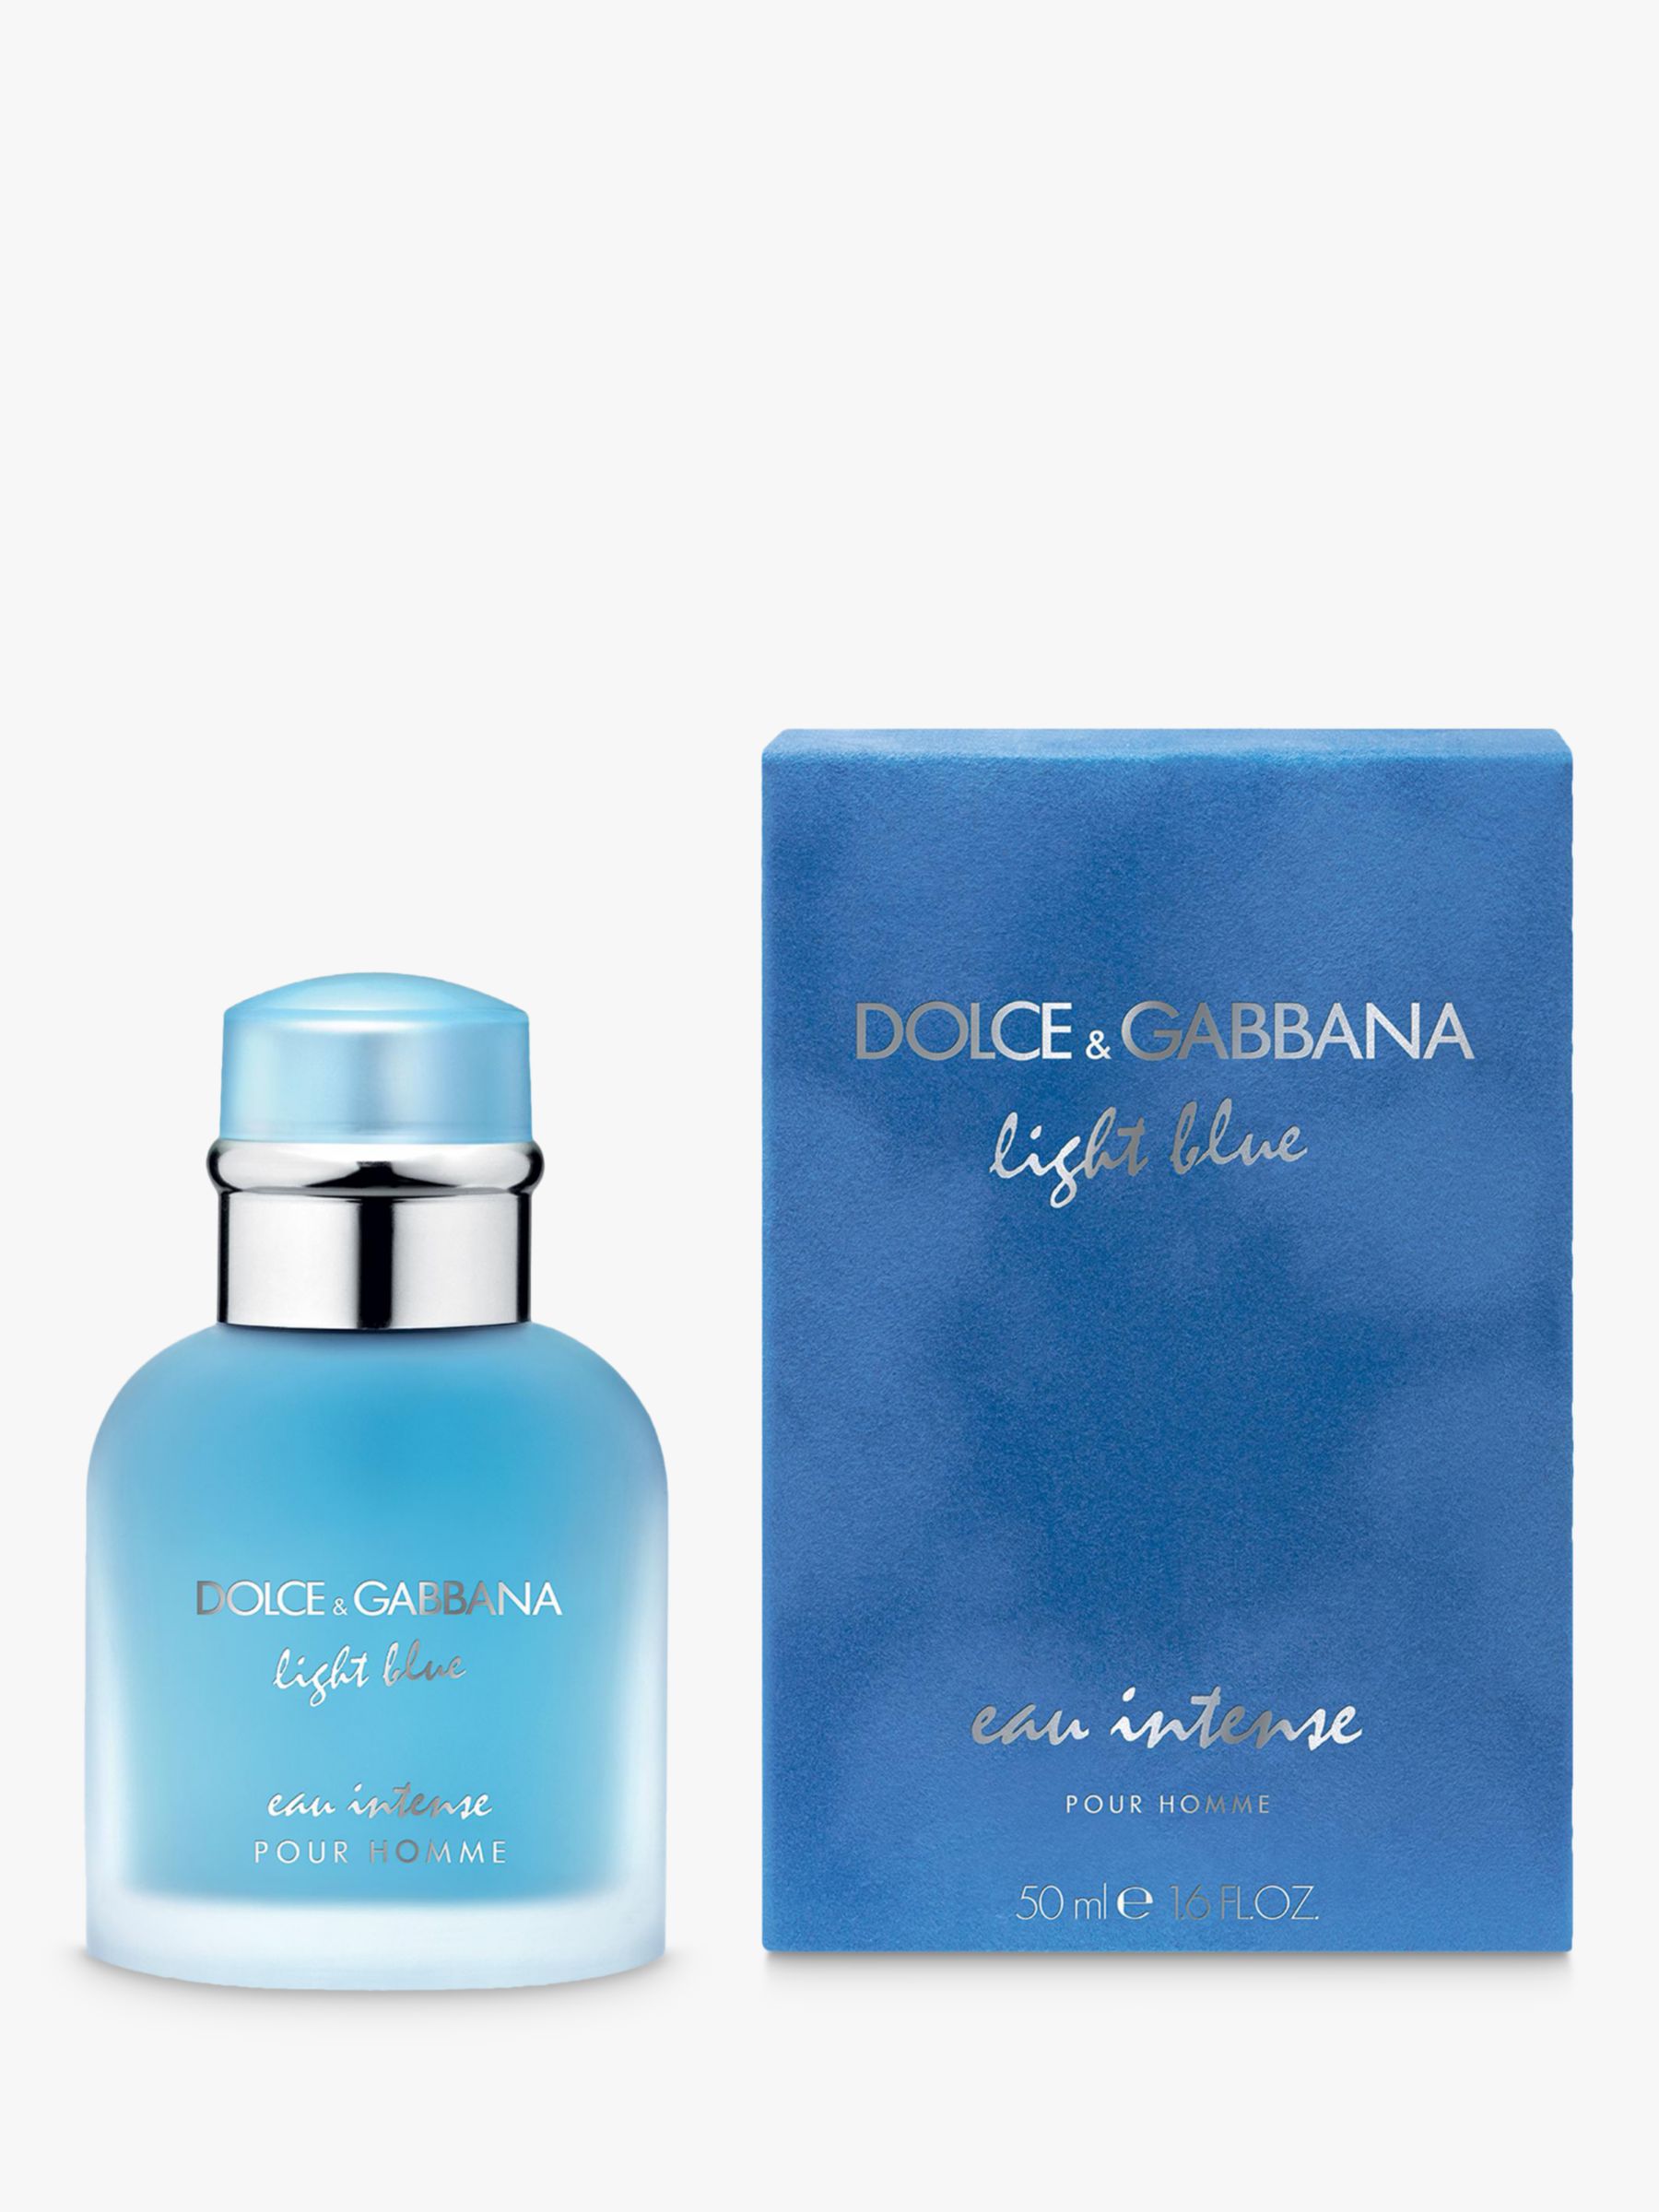 dolce & gabbana light blue pour homme eau intense eau de parfum